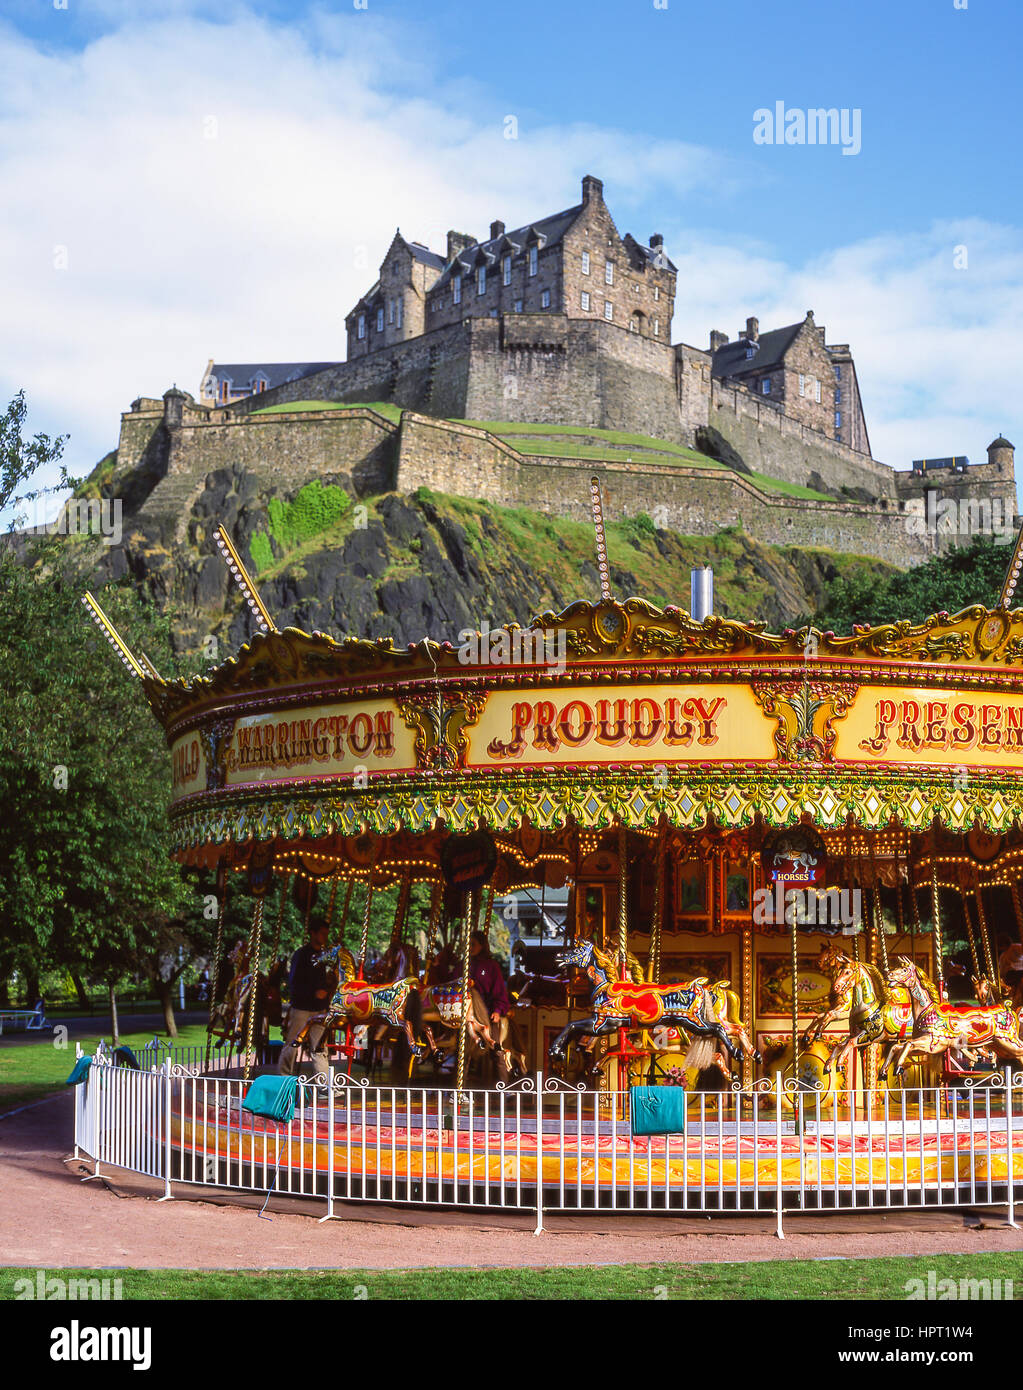 Carrousel pour enfants sous le château d'Édimbourg, Princes Street, Edinburgh, Lothian, Ecosse, Royaume-Uni Banque D'Images